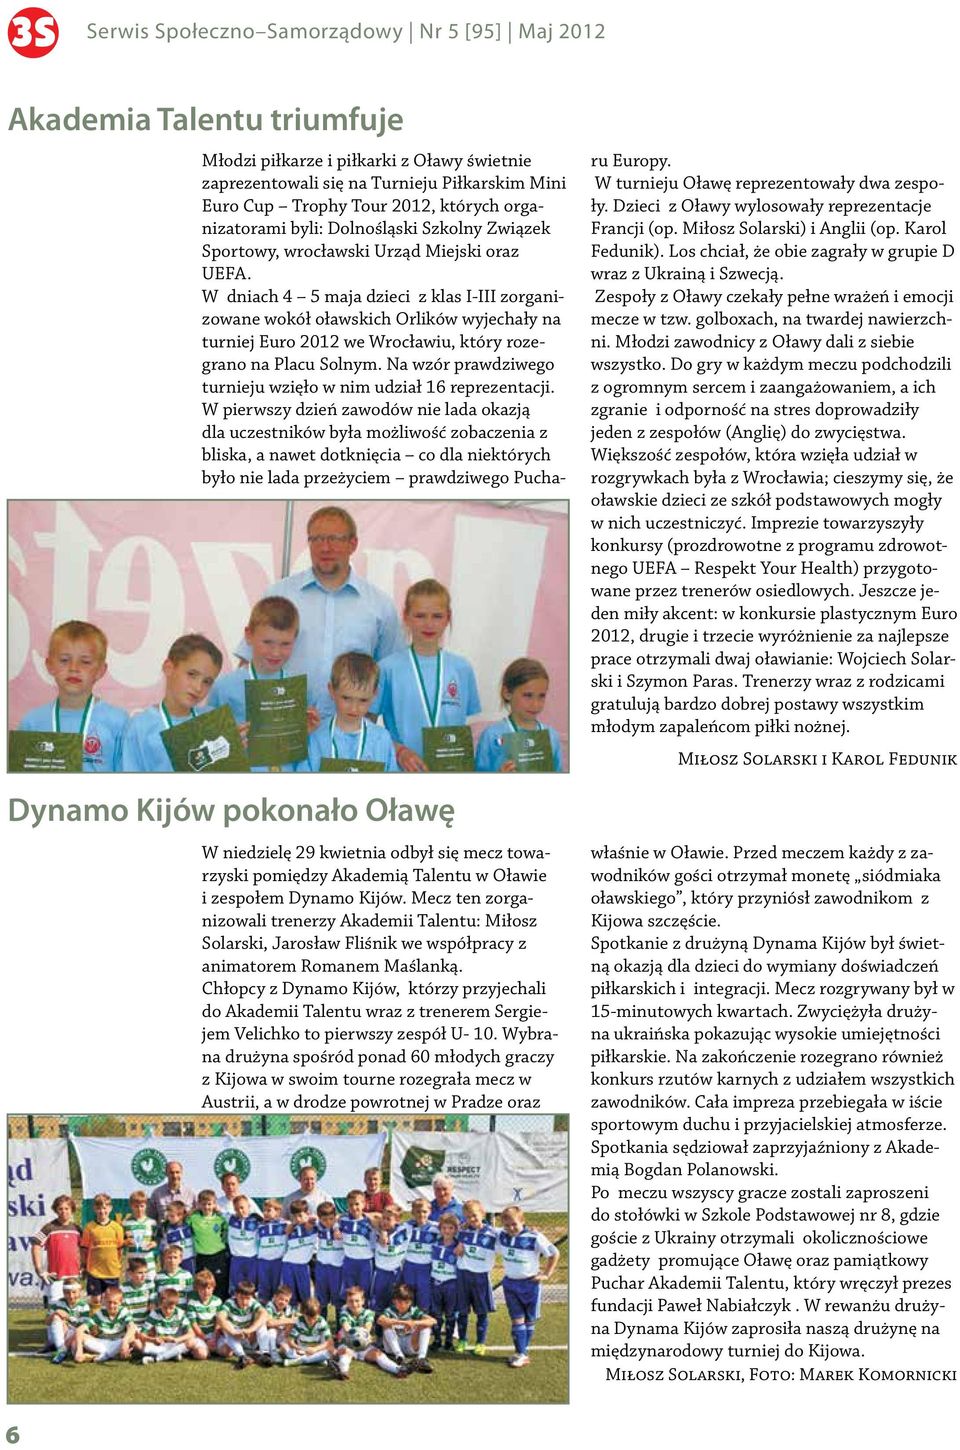 Chłopcy z Dynamo Kijów, którzy przyjechali do Akademii Talentu wraz z trenerem Sergiejem Velichko to pierwszy zespół U- 10.